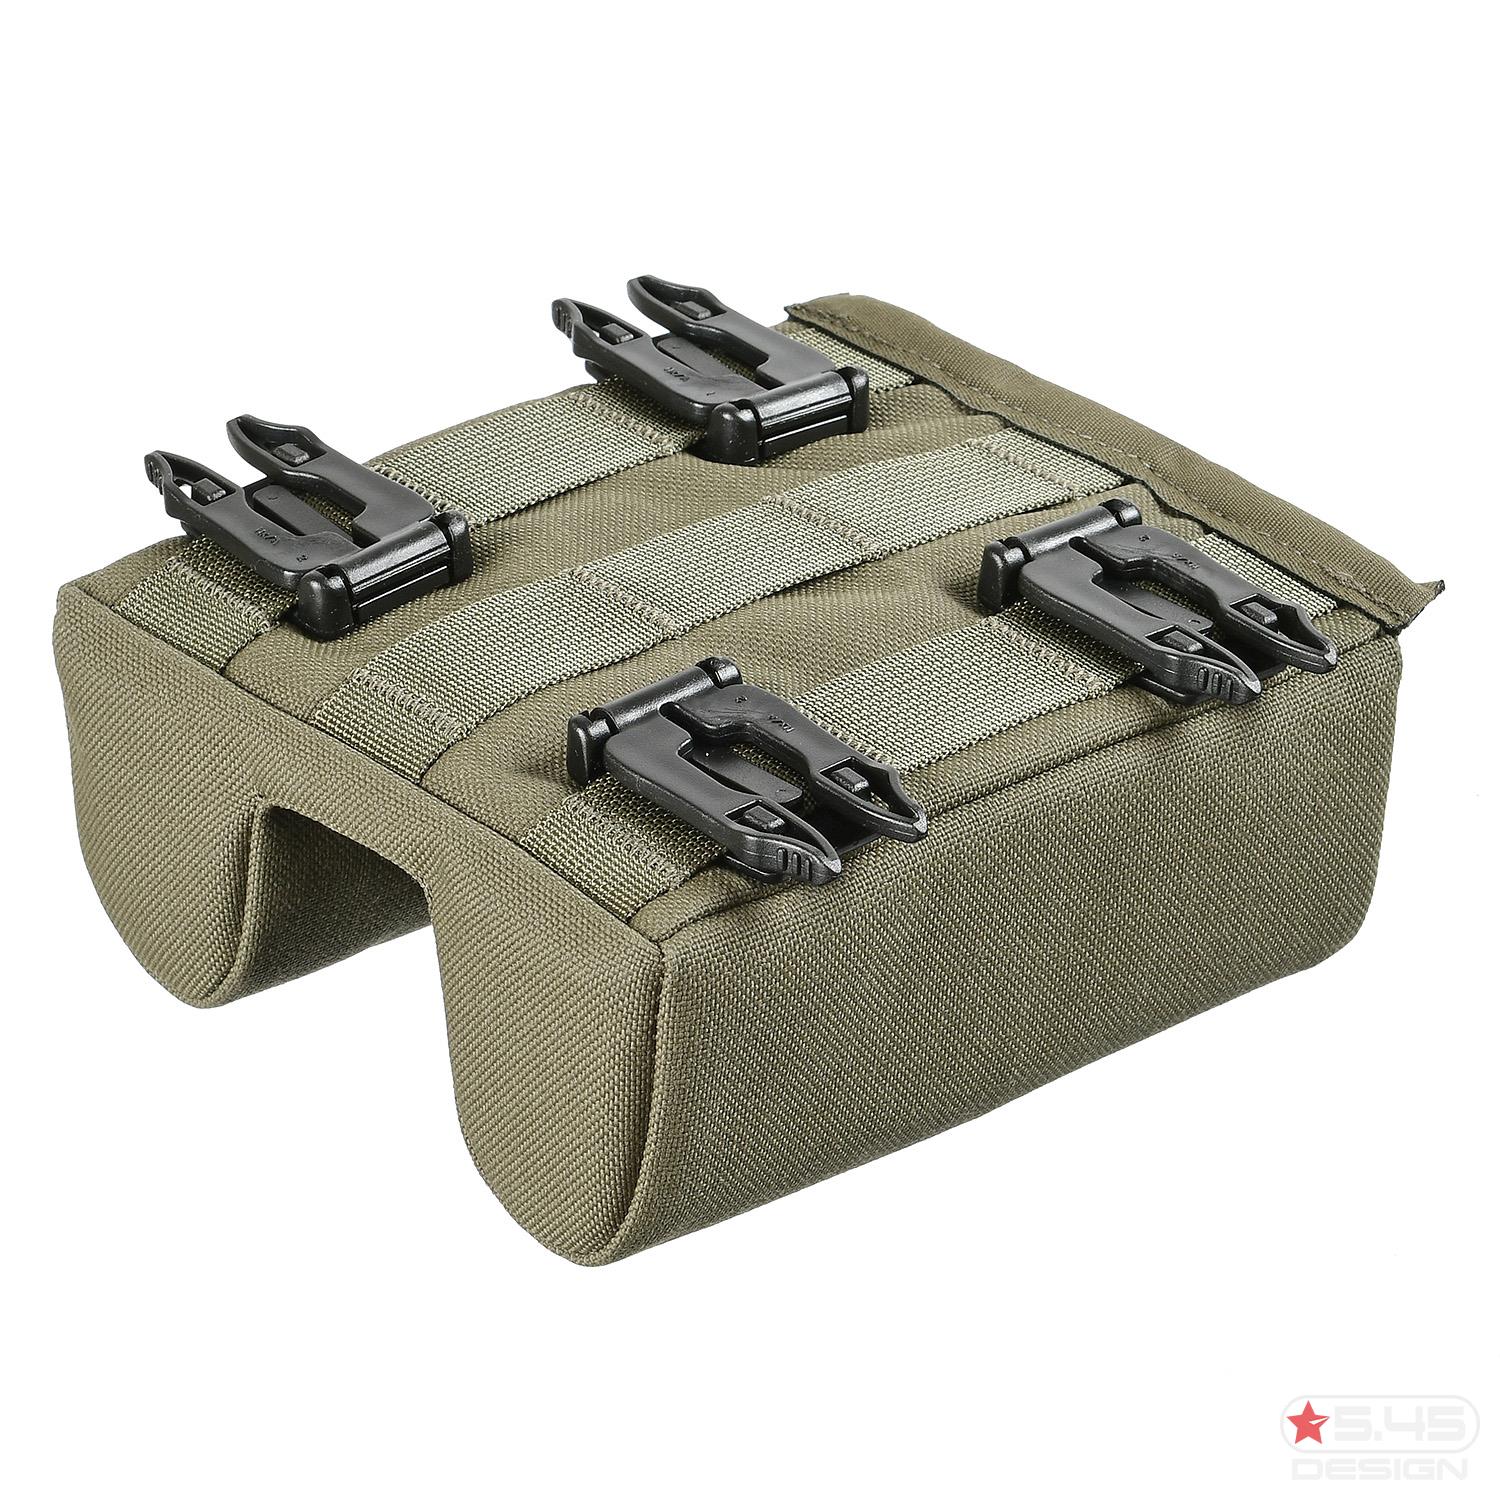 Для присоединения к рюкзаку имеются 4 крепления с пряжками.